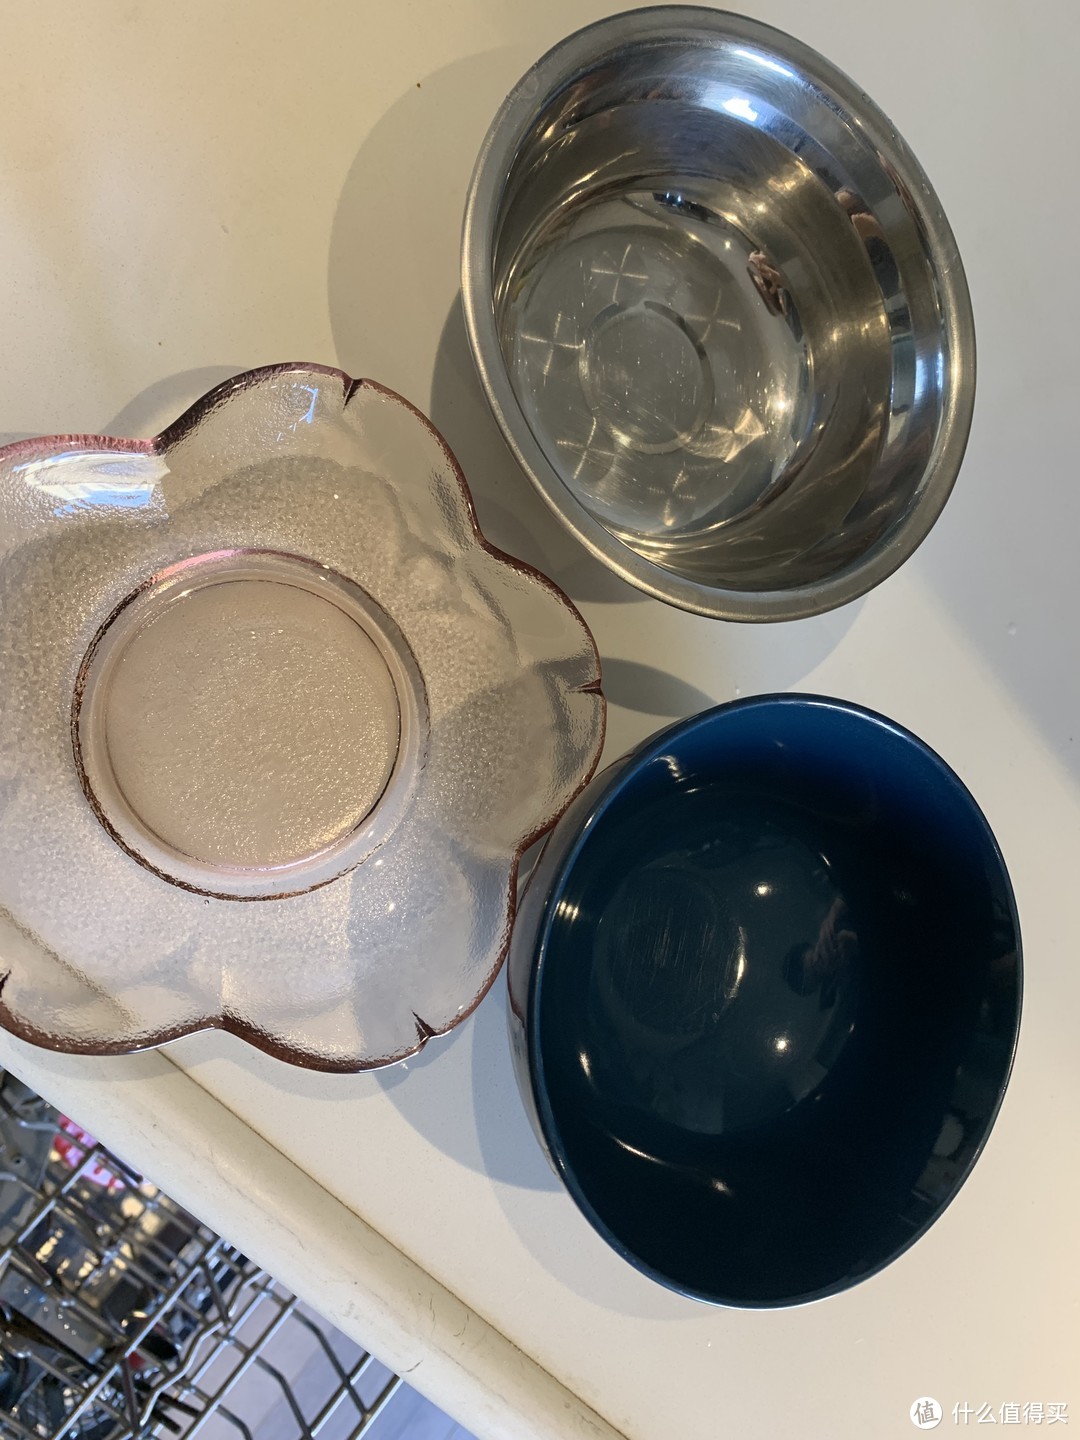 亮碟外的另一种选择：国产品牌简境洗碗机洗碗粉开箱对比实测